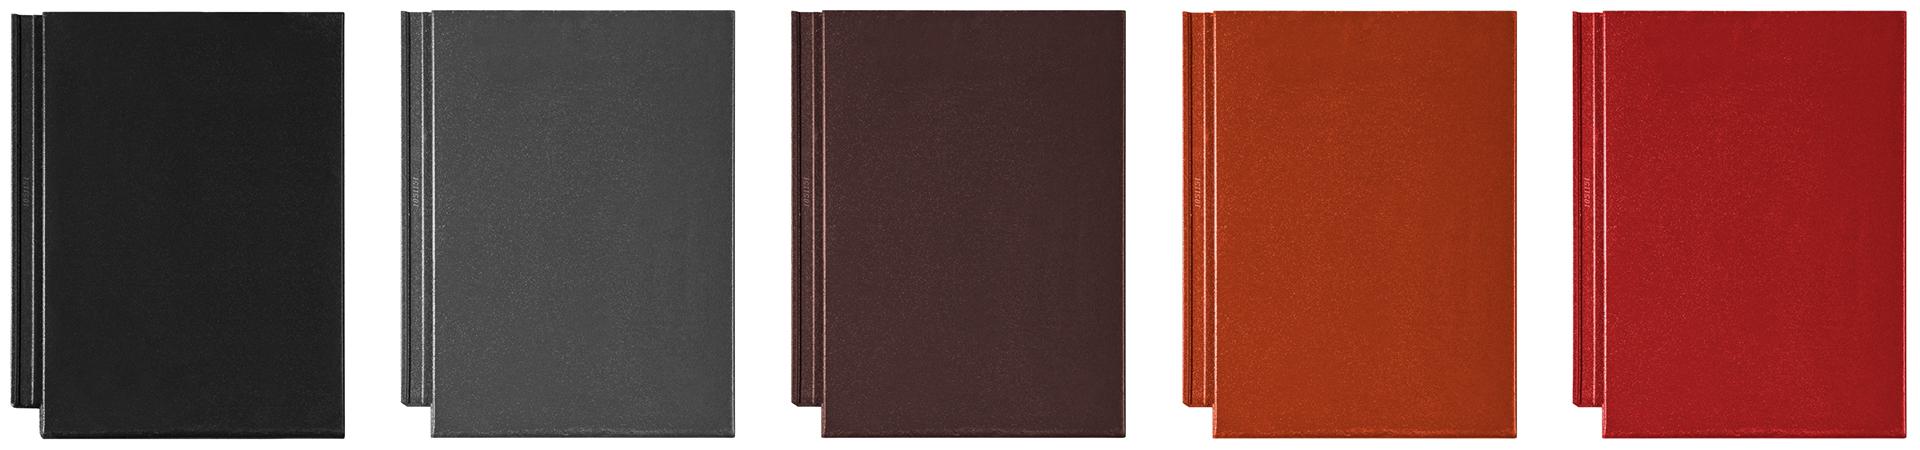 Ormax EVO -kattotiilten värivaihtoehdot ovat musta, tummanharmaa, ruskea, savitiilenpunainen ja tupapunainen.